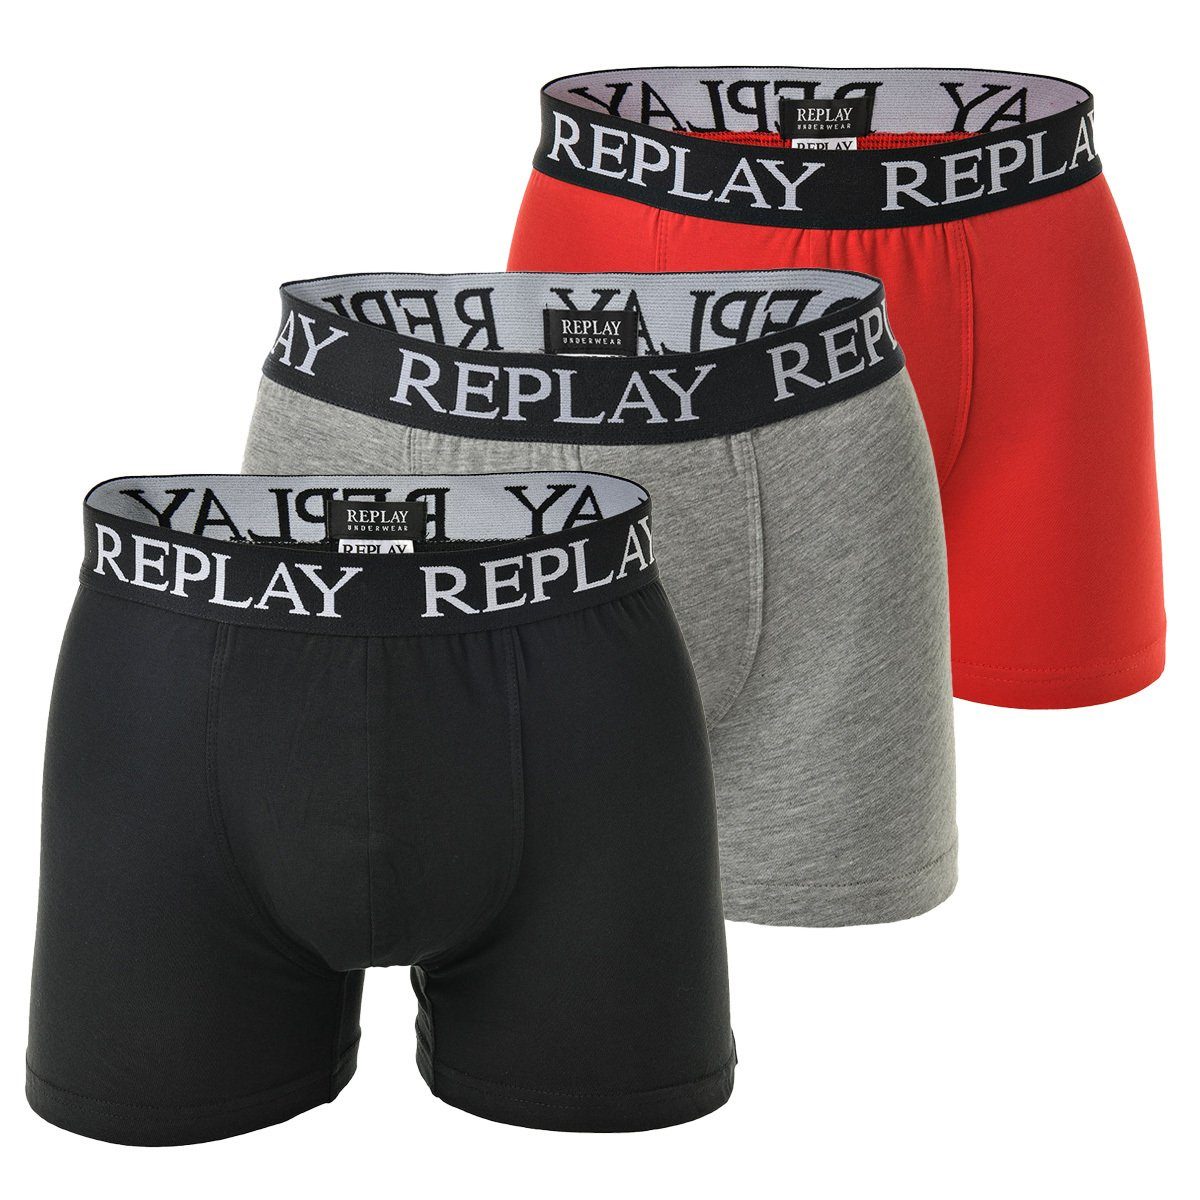 Schwarz/Grau/Rot Replay Boxershorts, Herren Pack - Boxer 3er Unterhosen